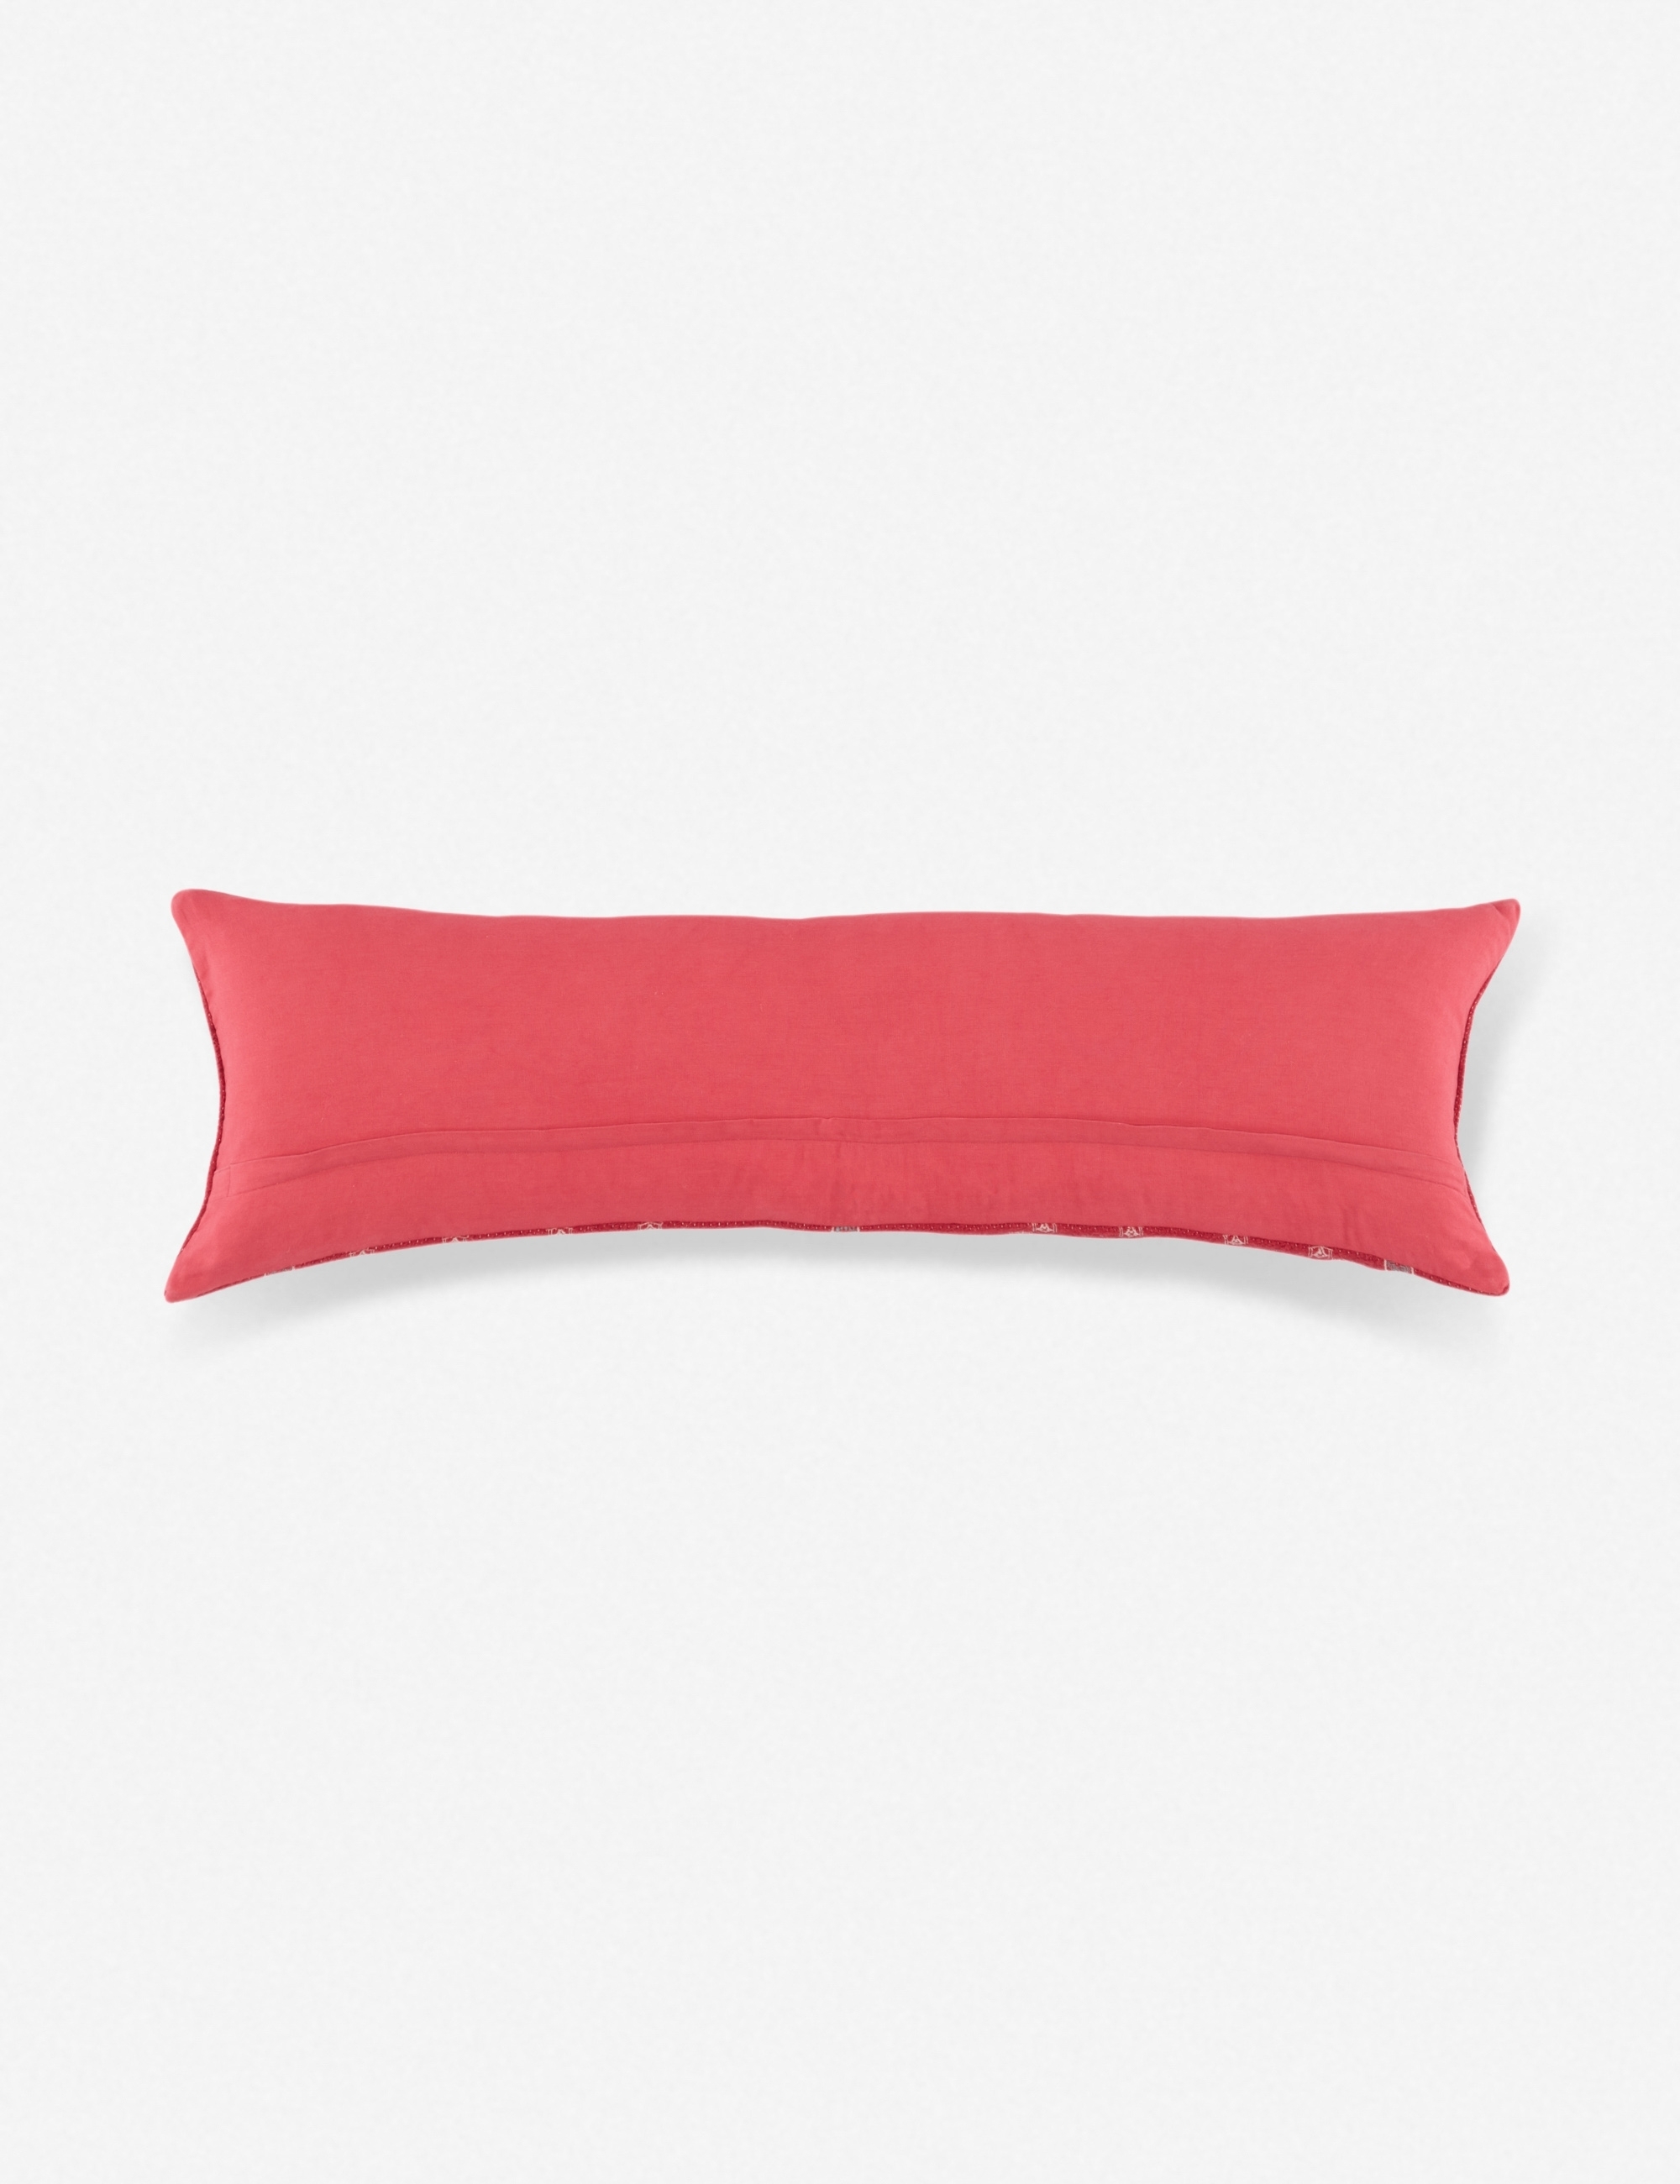 Scarlet Long Lumbar Pillow - Image 1